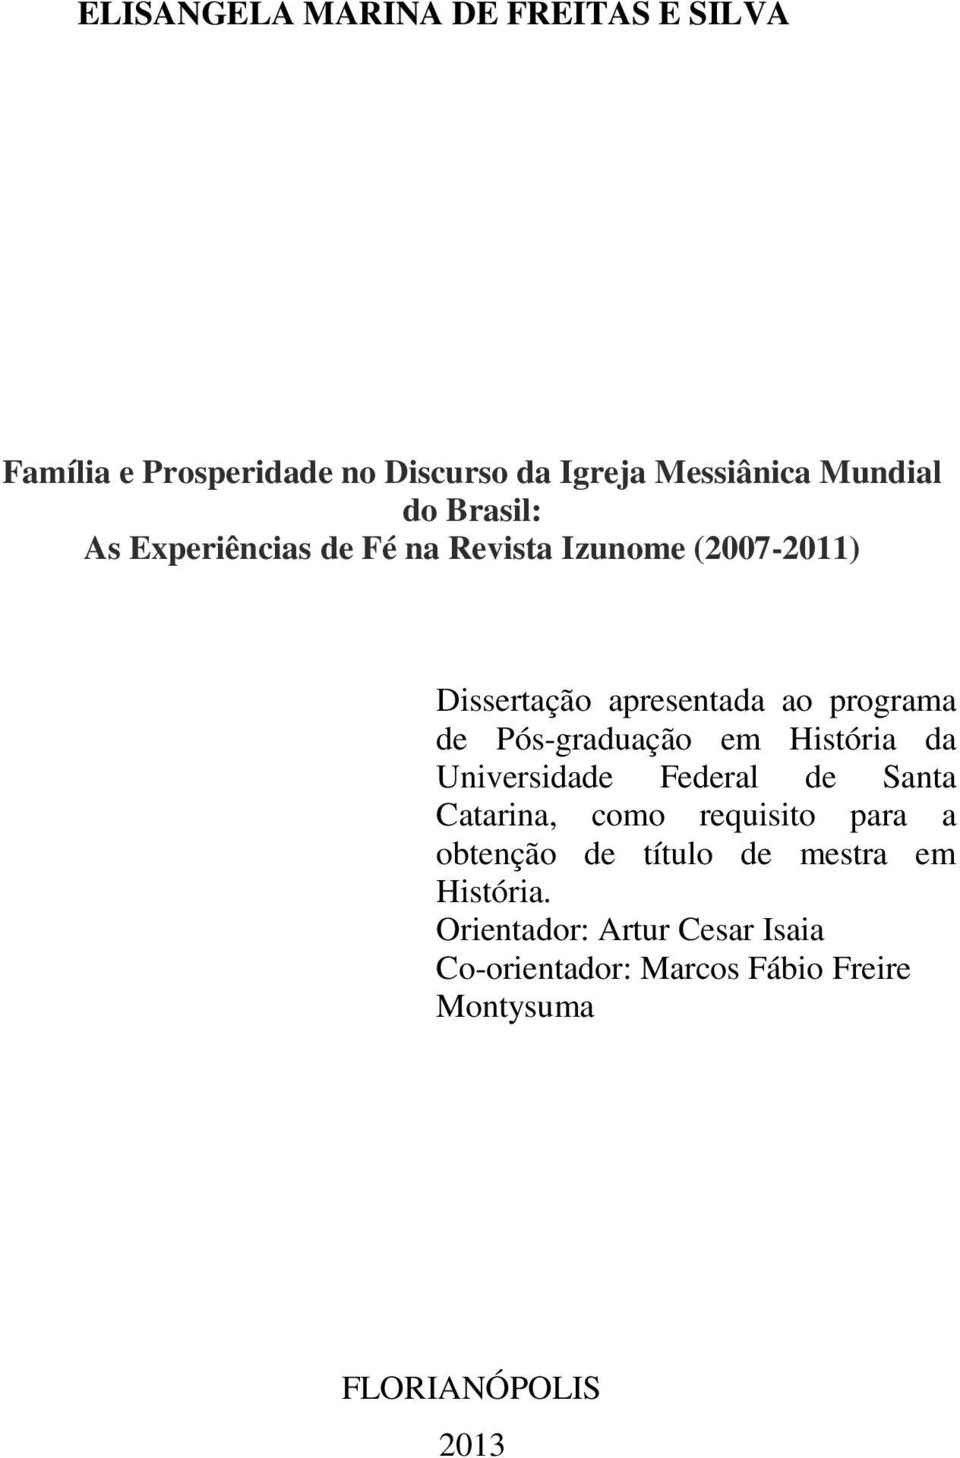 Pós-graduação em História da Universidade Federal de Santa Catarina, como requisito para a obtenção de